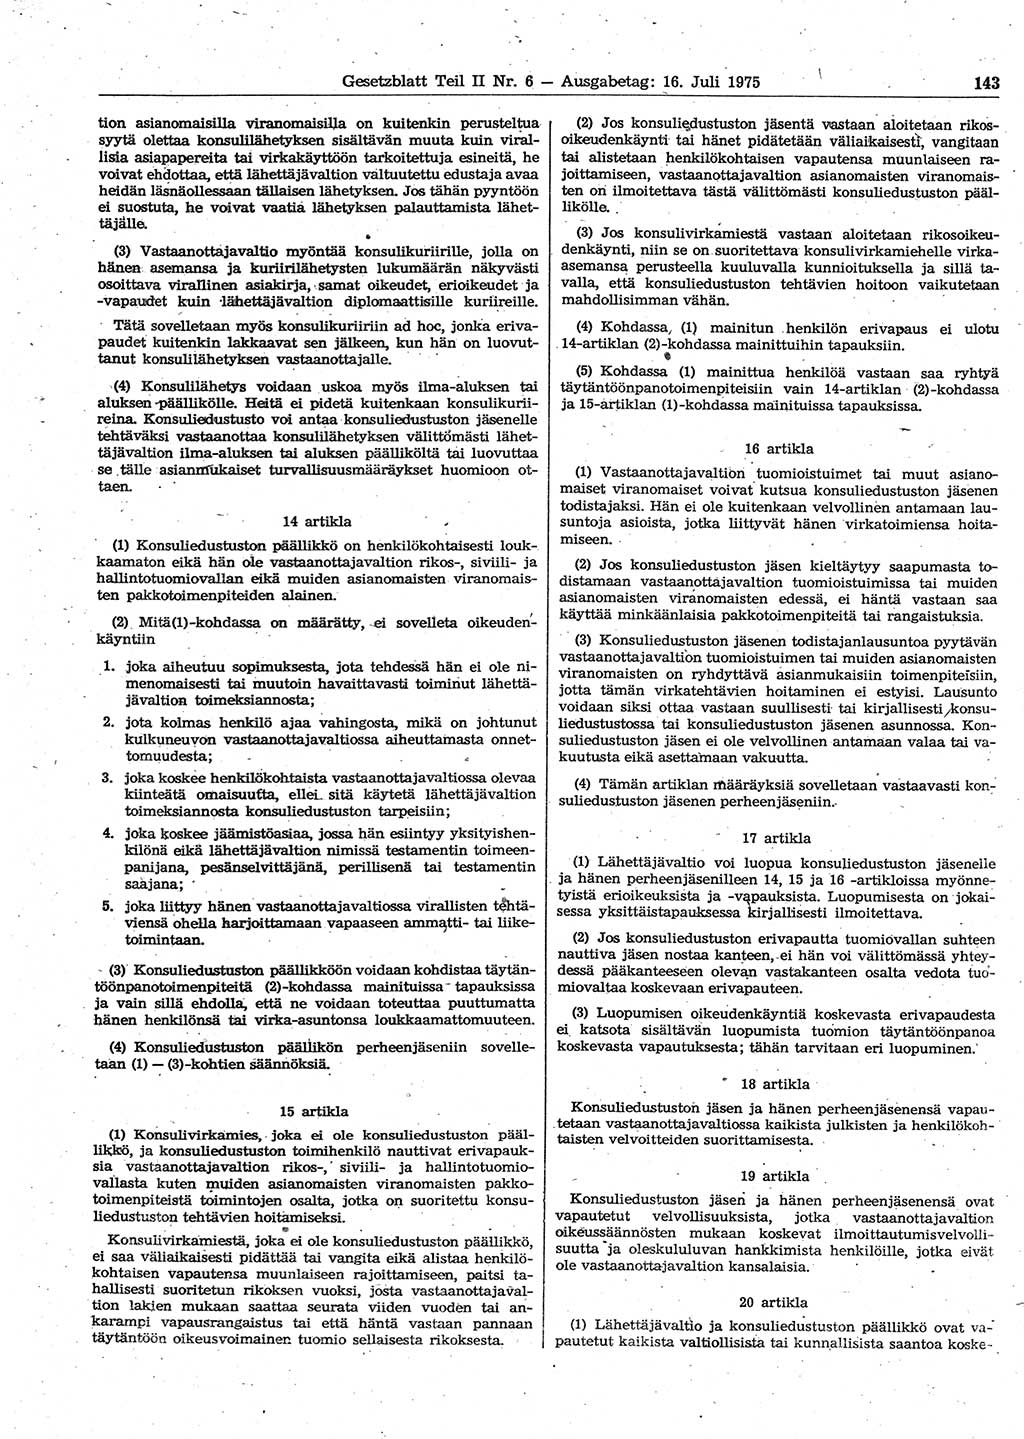 Gesetzblatt (GBl.) der Deutschen Demokratischen Republik (DDR) Teil ⅠⅠ 1975, Seite 143 (GBl. DDR ⅠⅠ 1975, S. 143)